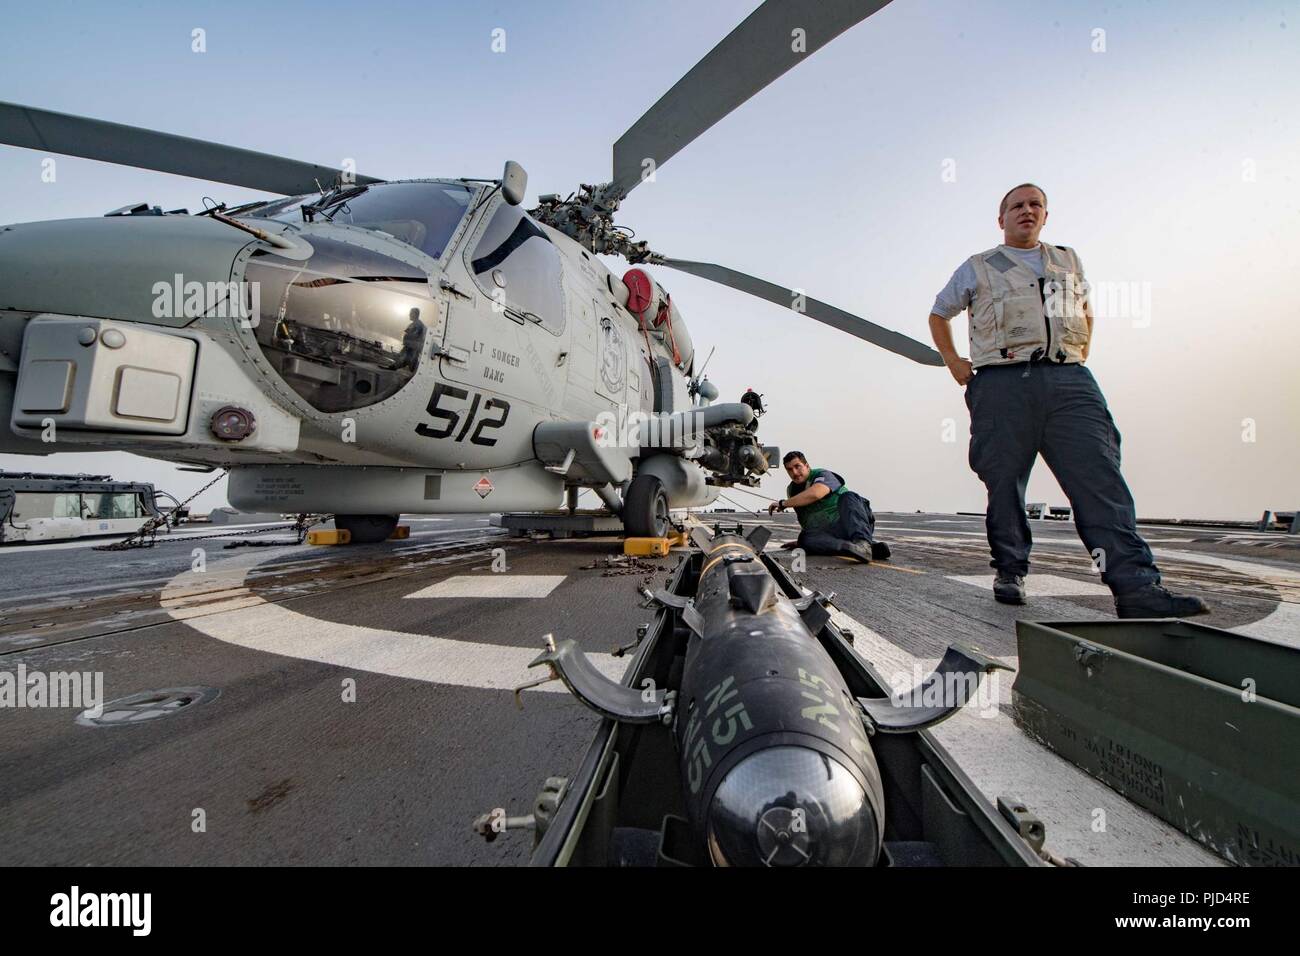 5ª Flota de EE.UU. ZONA DE OPERACIONES (18 de julio de 2018) la aviación Mecánica Estructural de primera clase, Thomas Hall, a la derecha, y la aviación Técnico Electrónico 2ª clase Michael Maye, asignada a las "víboras" huelga marítimo escuadrón de helicópteros (HSM) 48, se preparan para cargar un misil AGM-114 Hellfire en un helicóptero MH-60 Seahawk R en la cubierta de vuelo del misil guiado por el destructor USS Jason Dunham (DDG 109). Jason Dunham está desplegado en los EE.UU. 5ª Flota de la zona de operaciones en apoyo de las operaciones navales para garantizar la estabilidad y la seguridad marítima en la región central, que conecta el Mediterráneo y el P Foto de stock